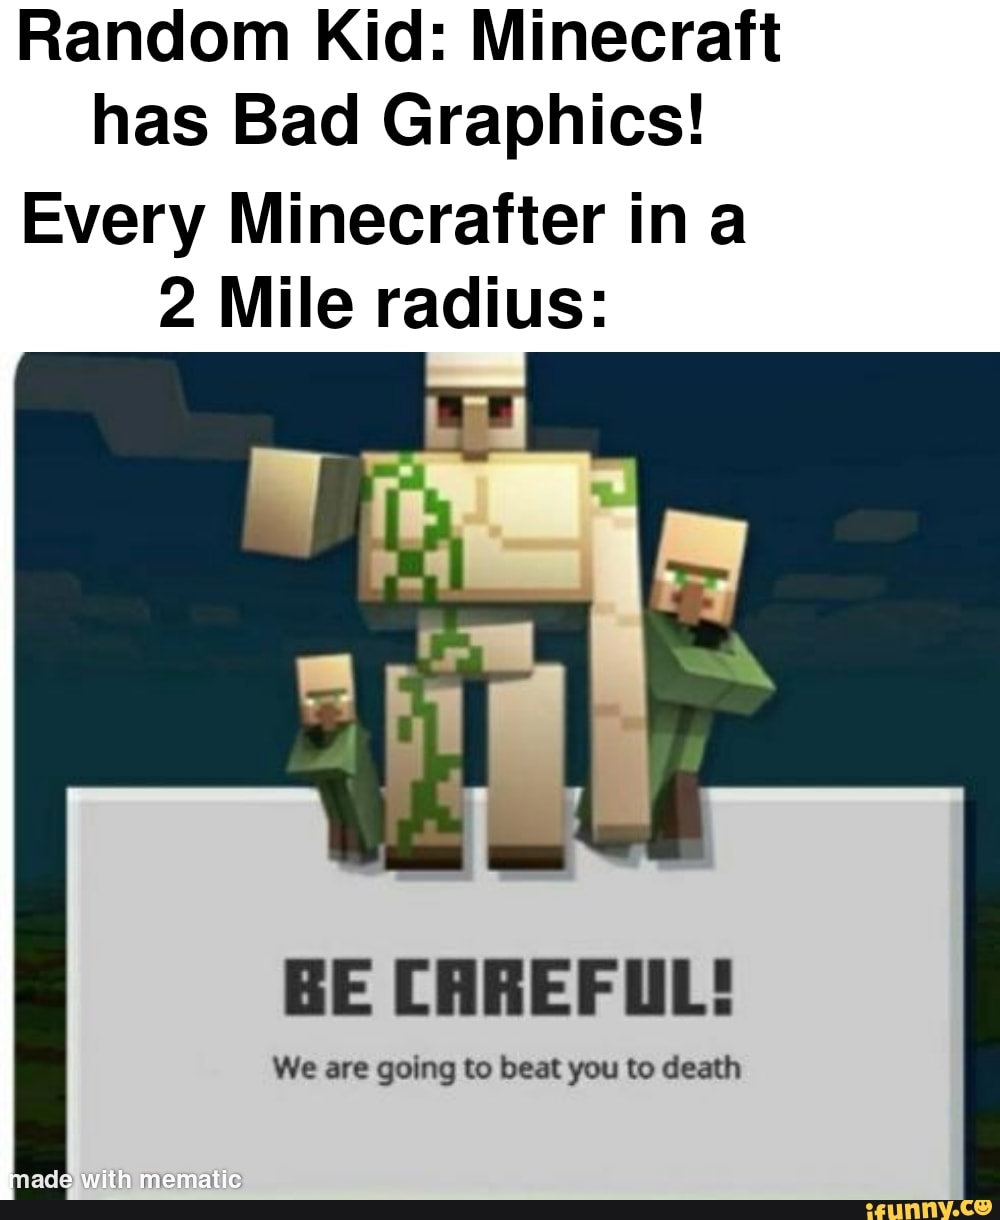 this Minecraft ripoff ad : r/badads